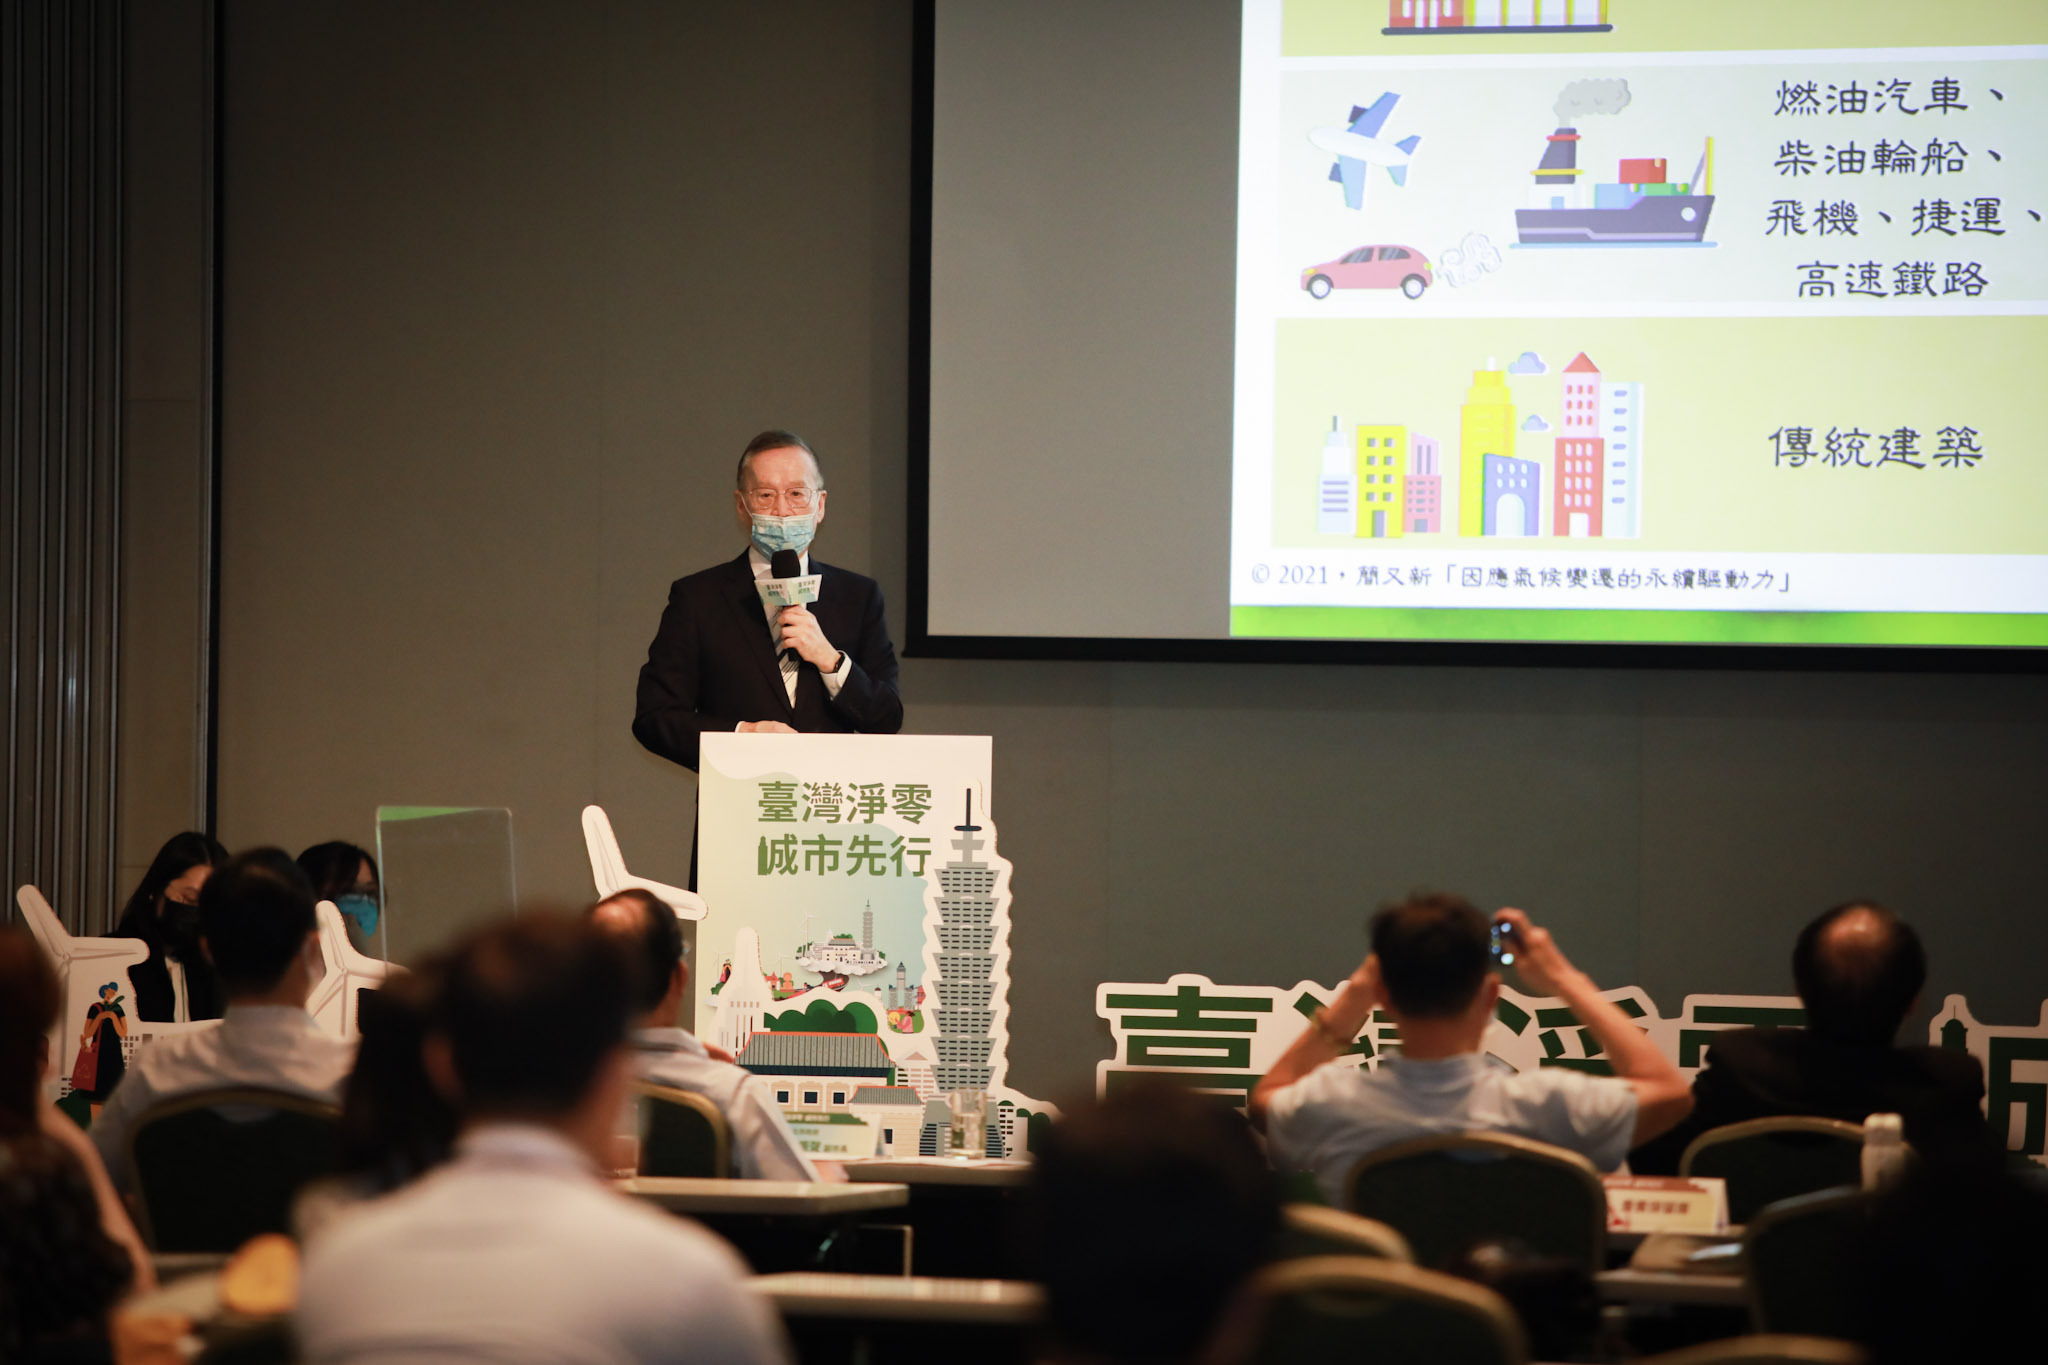 臺灣永續能源研究基金會董事長簡又新表示，碳中和已是全球趨勢，2030年臺灣所有外銷產業都需要用綠電，呼籲臺灣政府制定更加積極的減碳政策及目標。